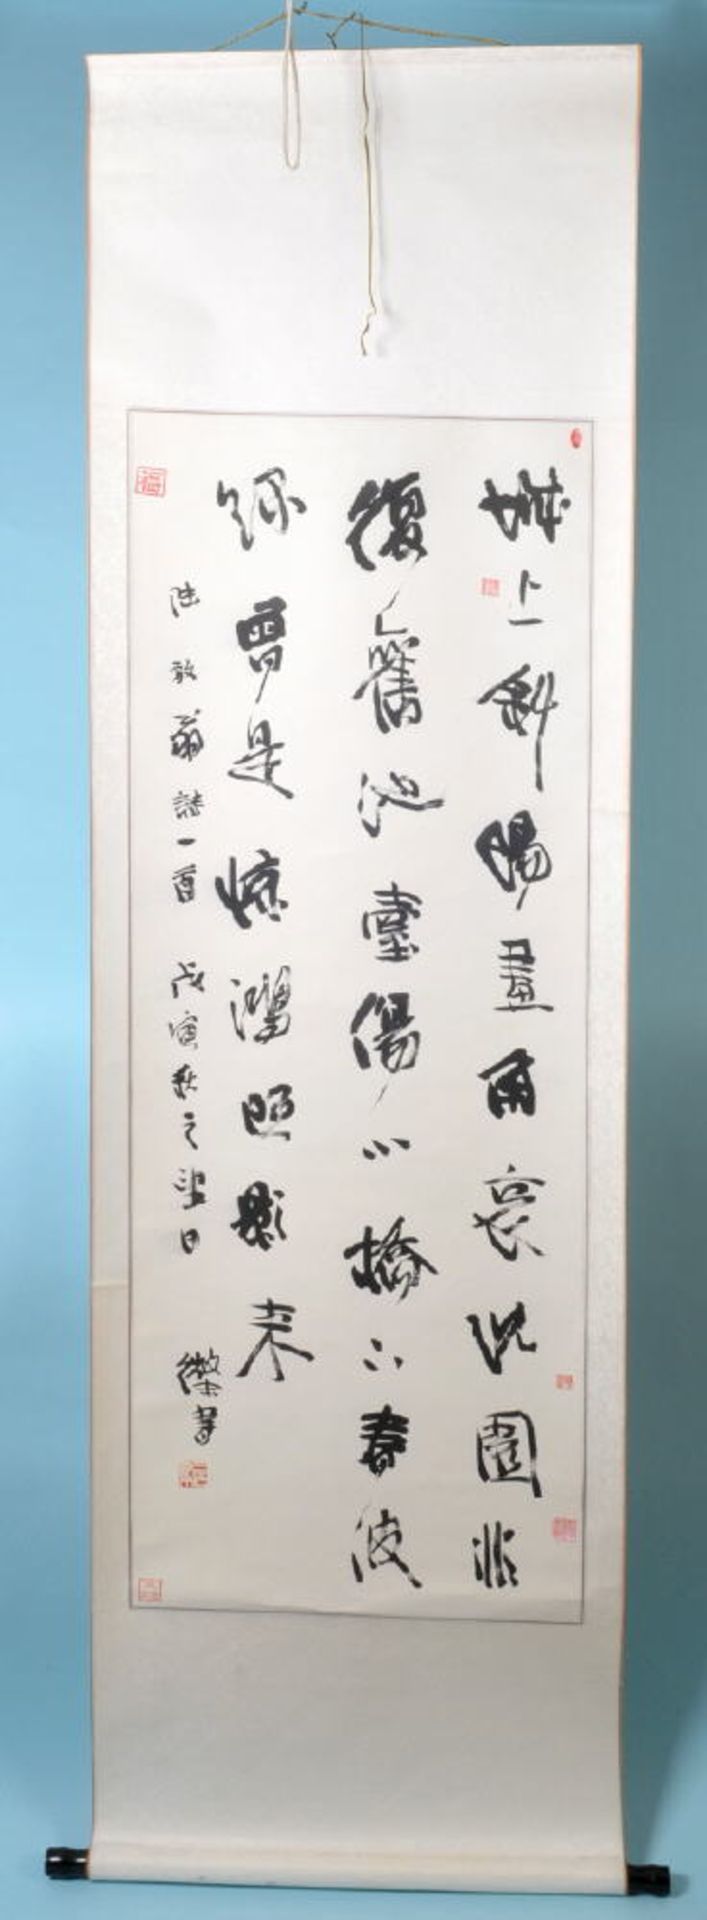 Rollbild, 20 Jh.Lithographie, Gesamt 207 x 59 cm, " Schriftzeichen ", China, Museumsreplik